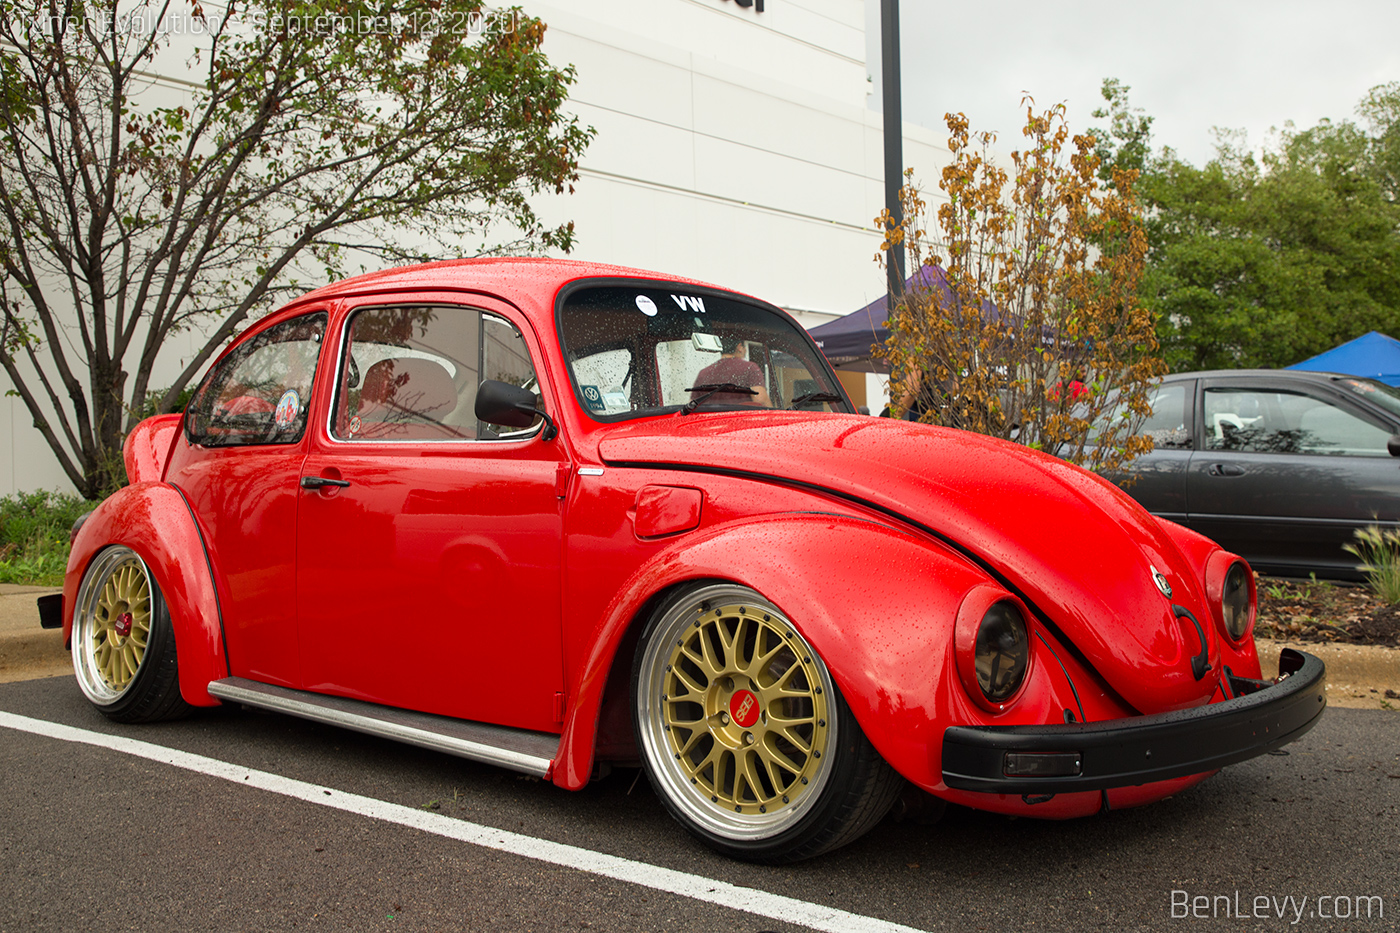 Red VW Beetle on BBS Wheels